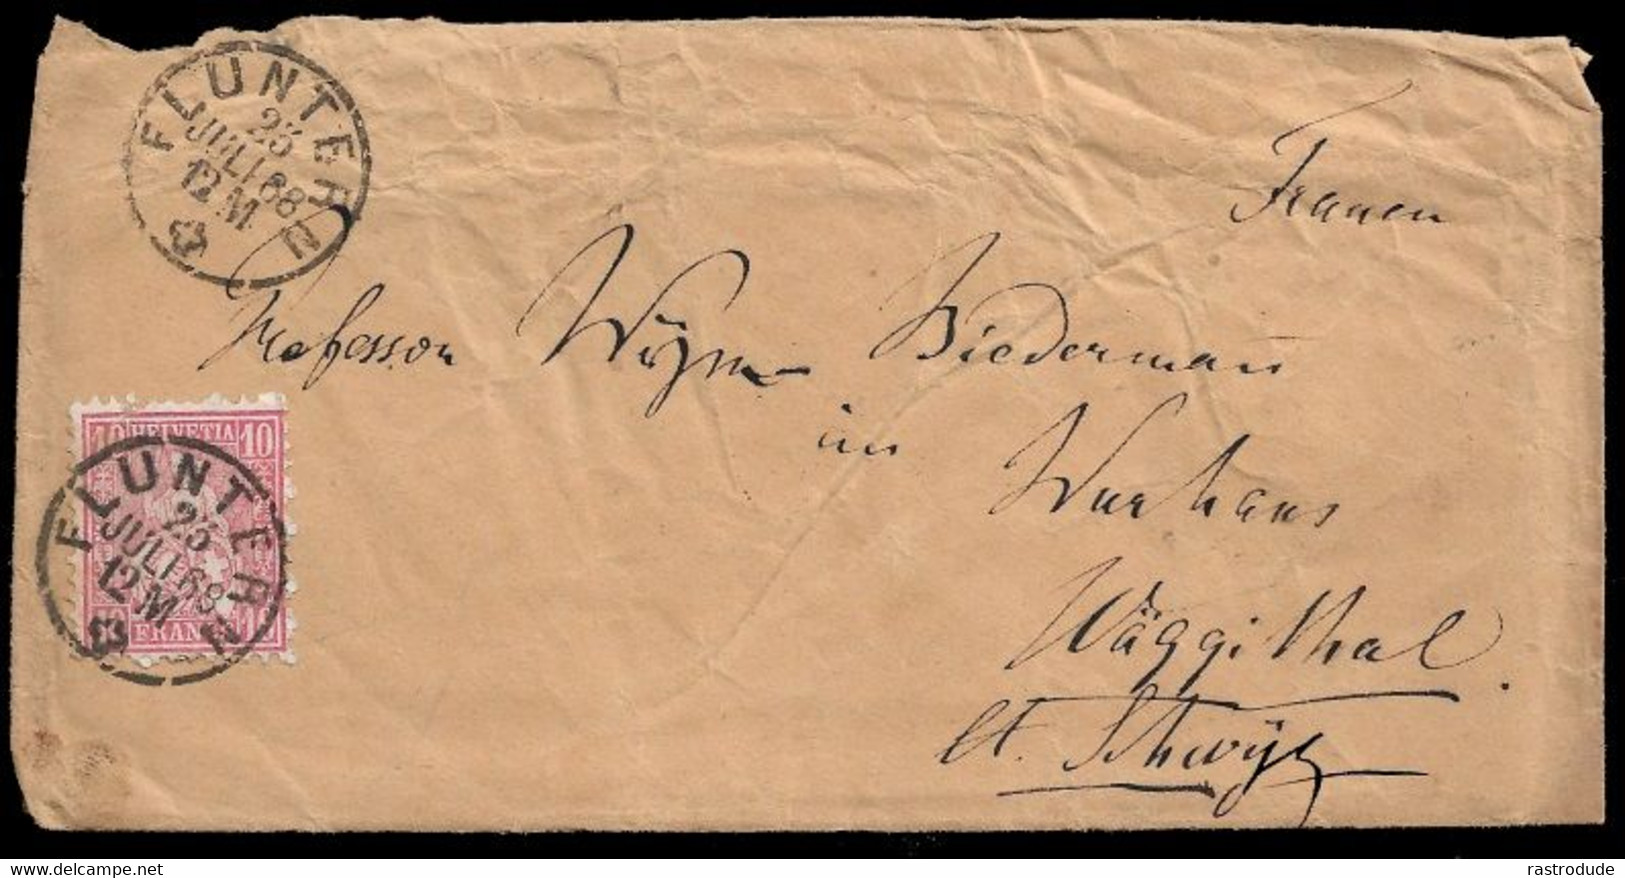 1868, 23 JULI -  SCHWEIZ SUISSE SWITZERLAND - 10Rp BRIEF (SBK 38) - FLUNTERN (ZÜRICH ZH) - Storia Postale